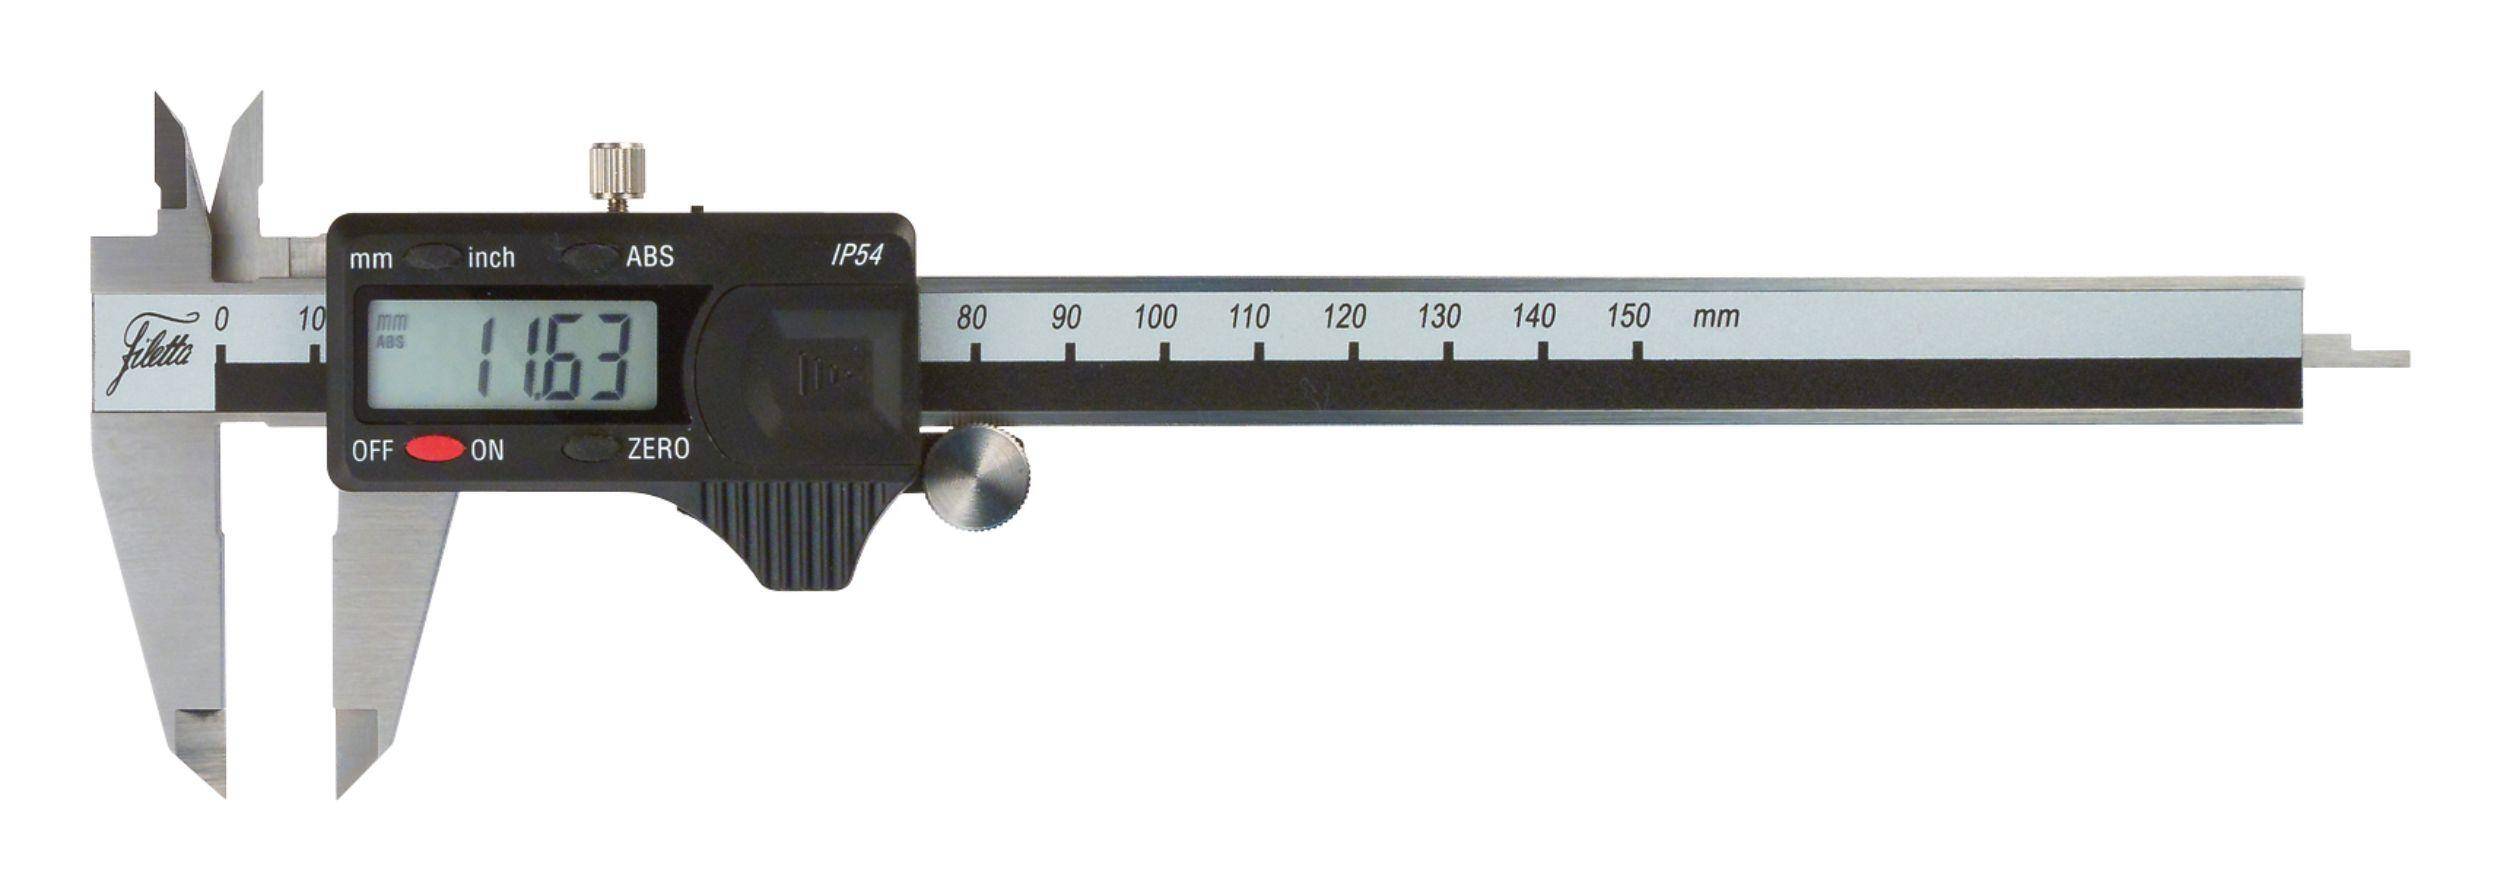 SCHUT suwmiarka elektroniczna 150/0.01 mm IP54 ABS + świadectwo wzorcowania 906.177 WZORC (Zdjęcie 3)